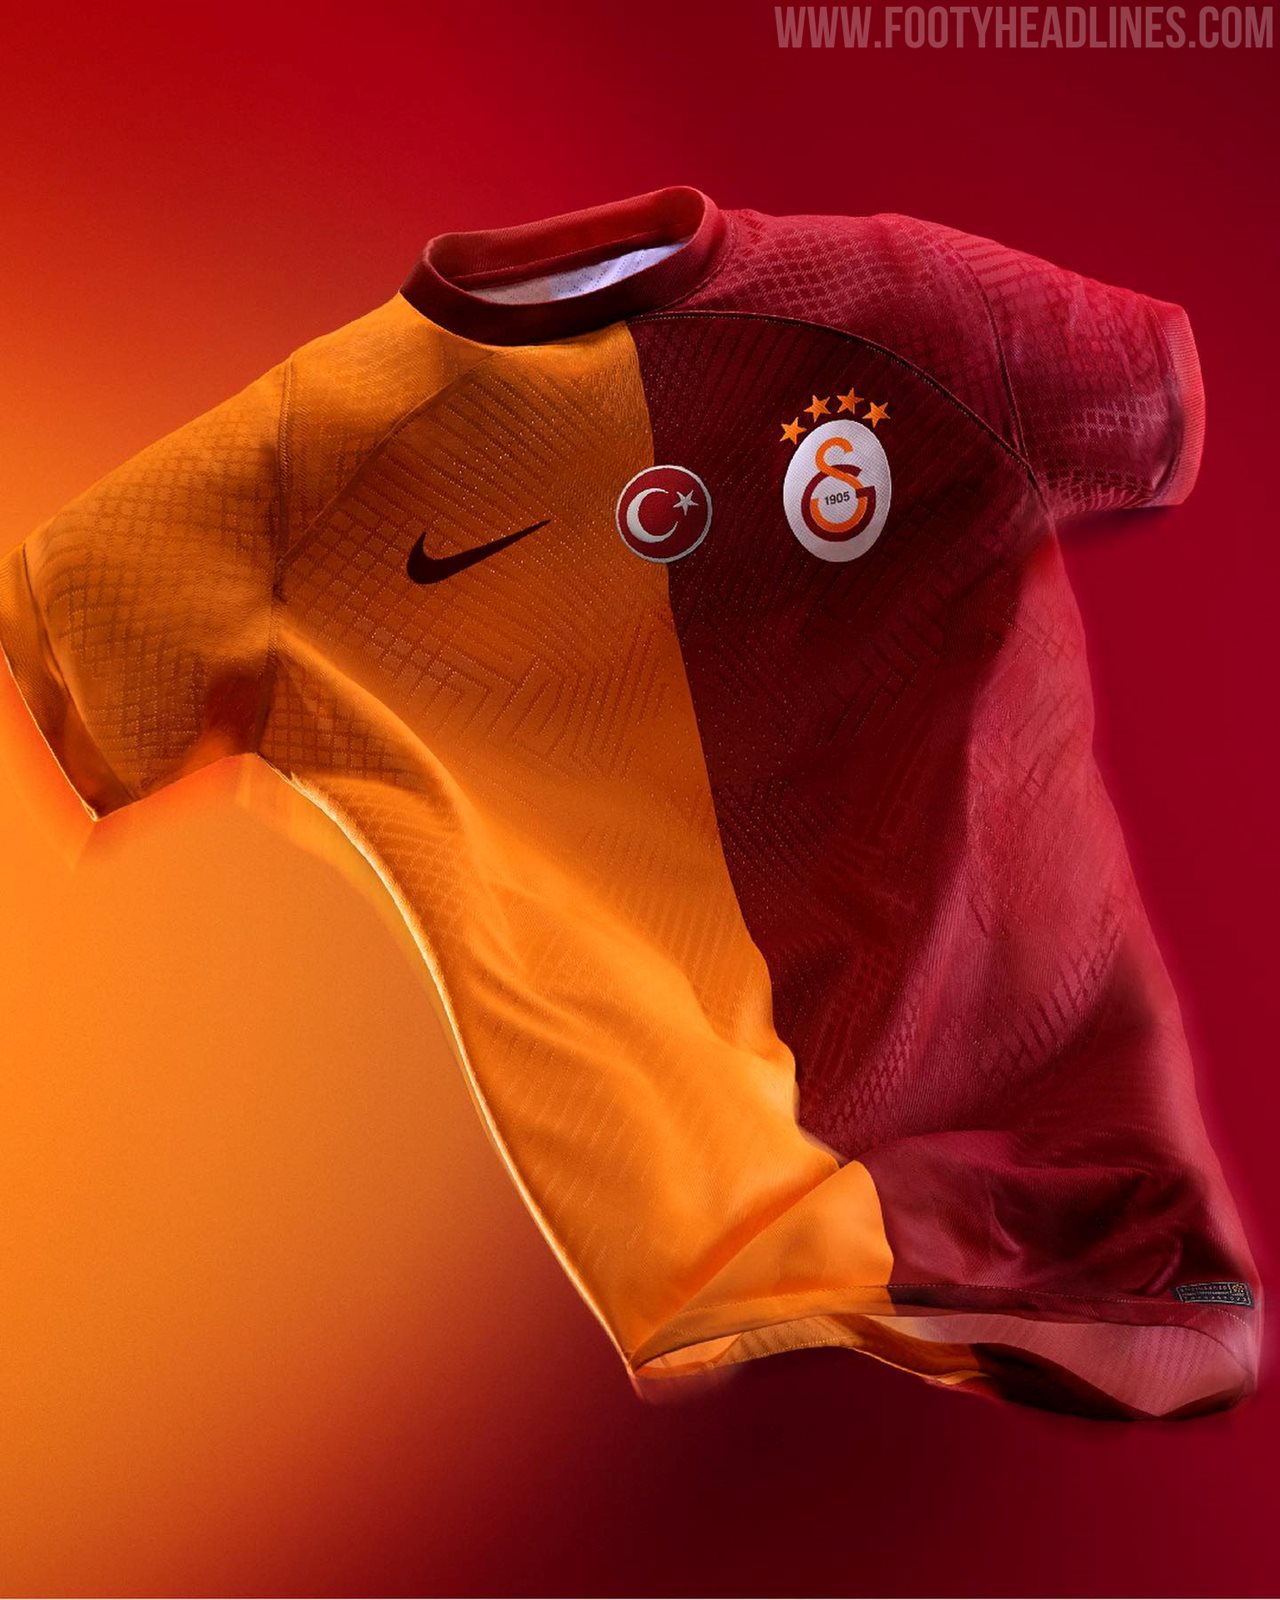 23/24 Mens Galatasaray AS Jerseys, Galatasaray AS Kits, Galatasaray AS  Shirts